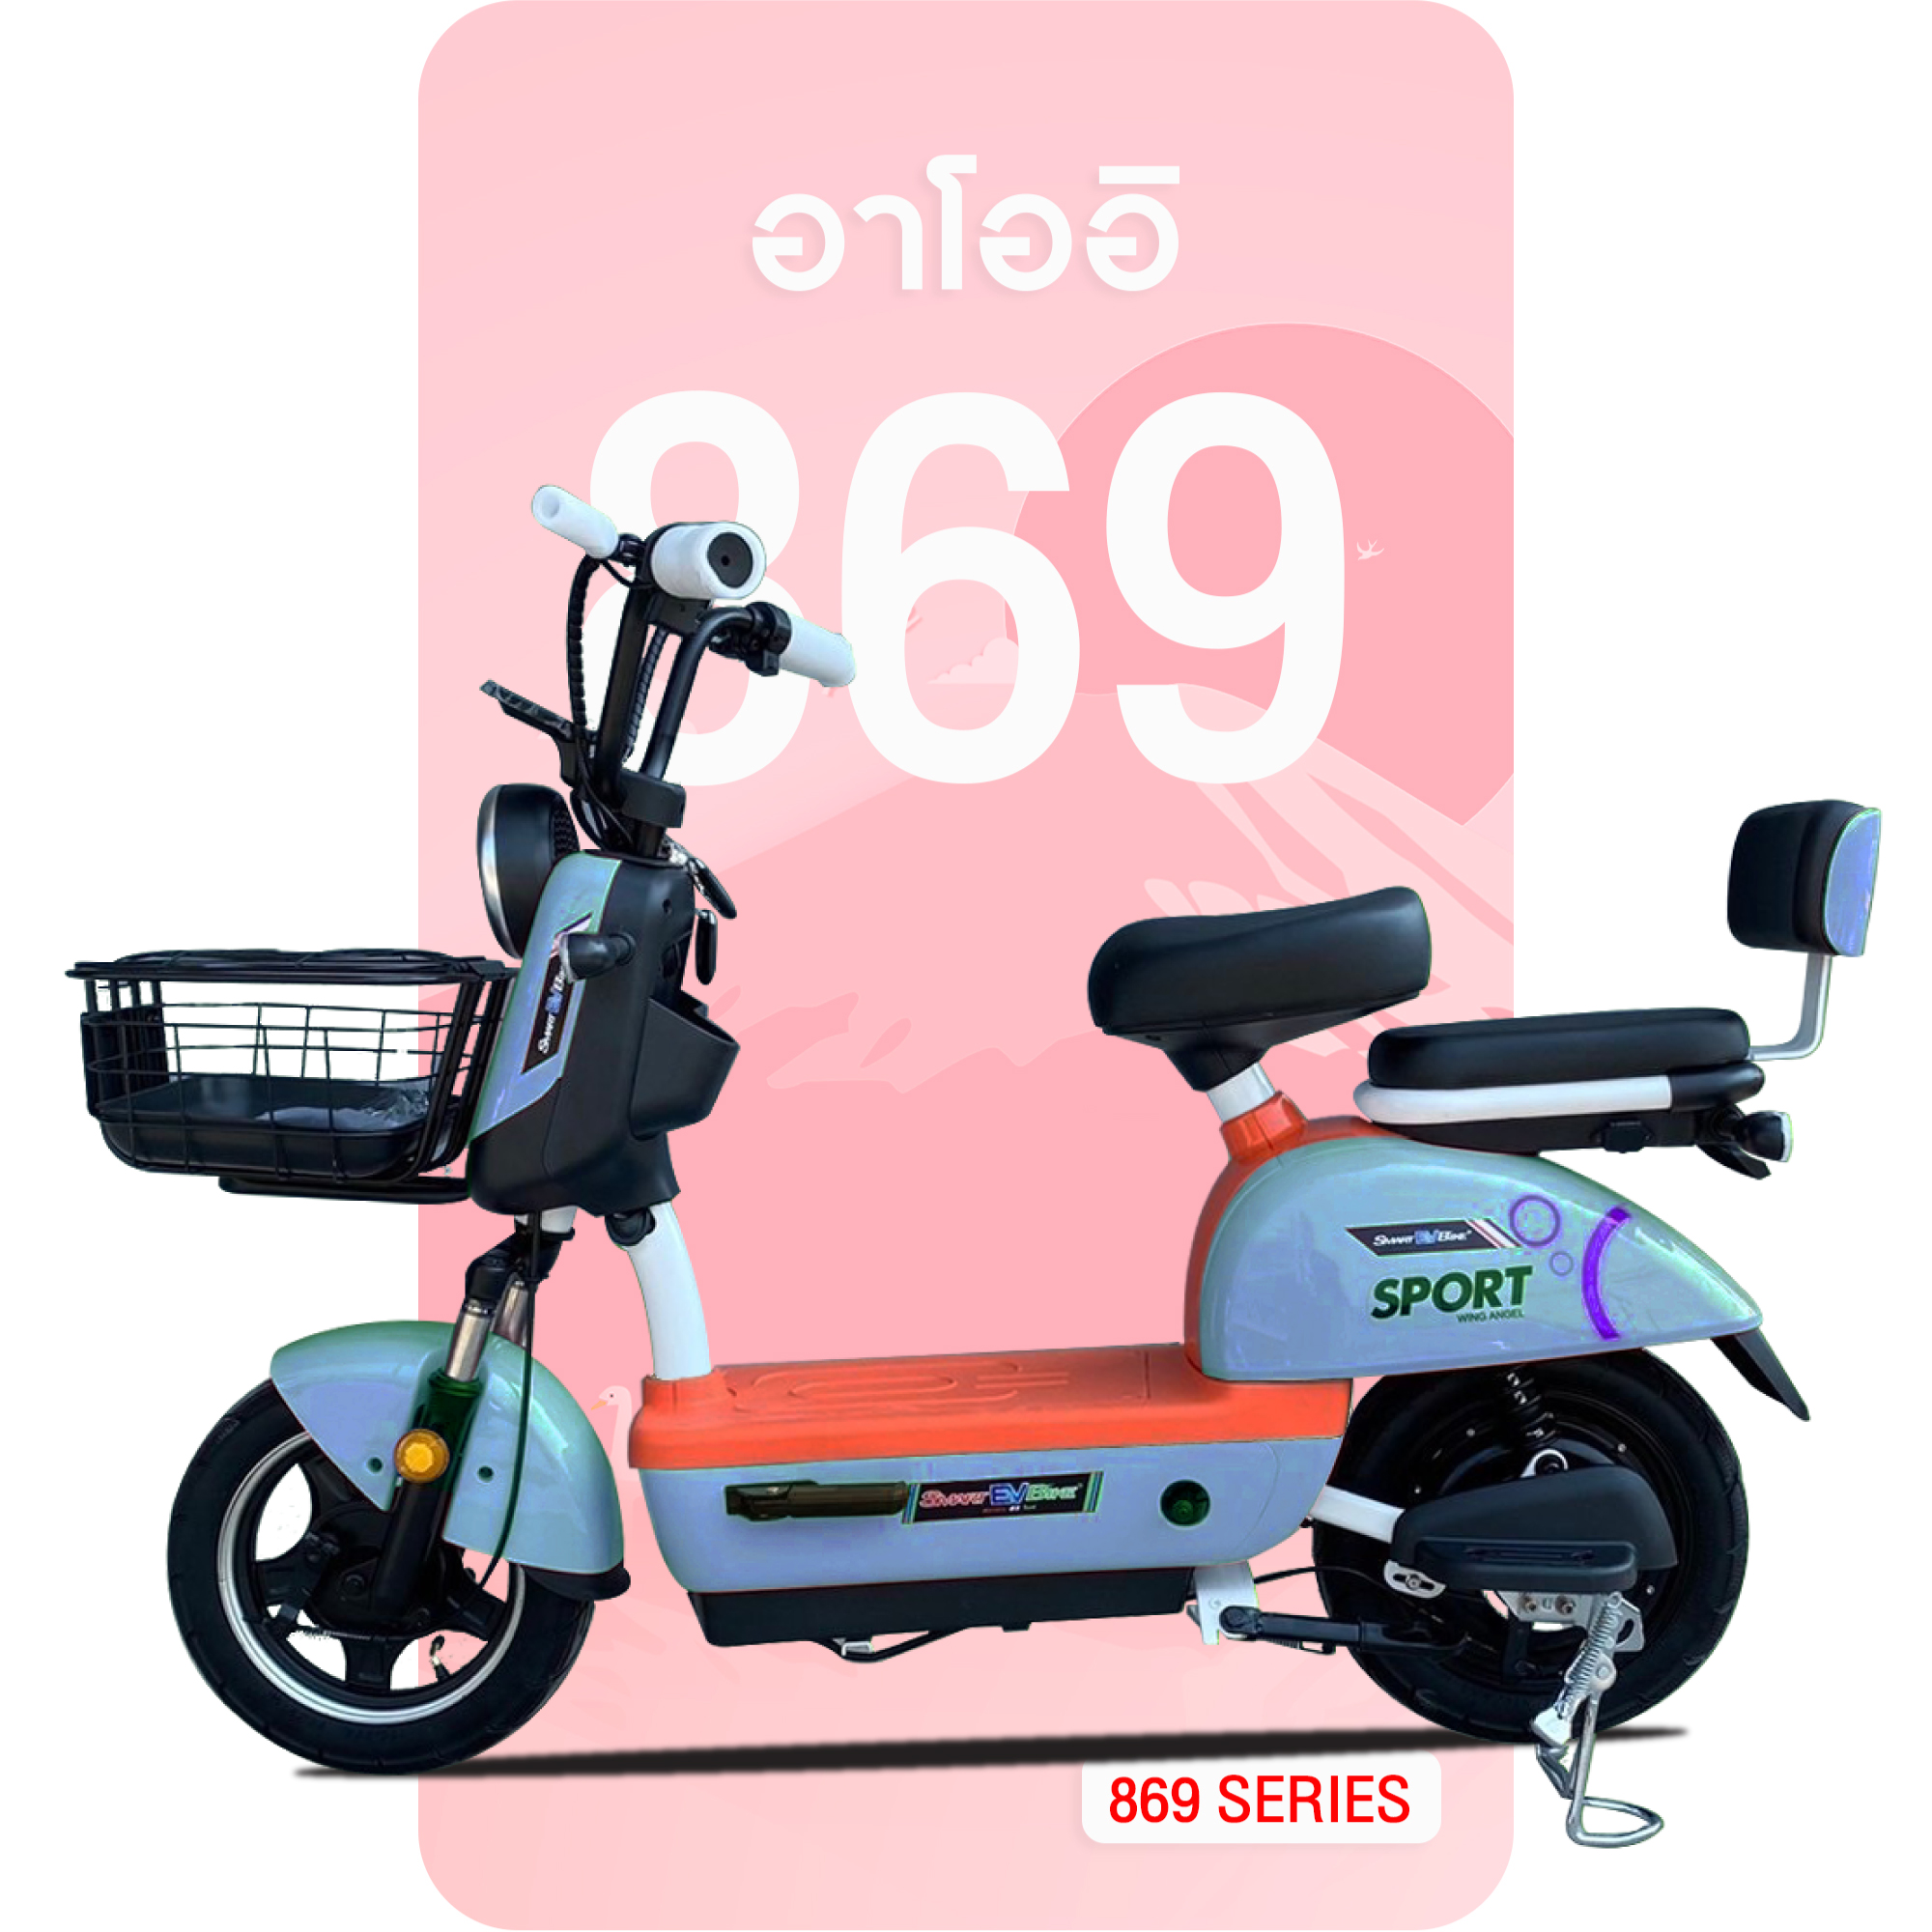 จักรยานไฟฟ้าอาโออิ 869 สีน้ำเงิน-ส้ม